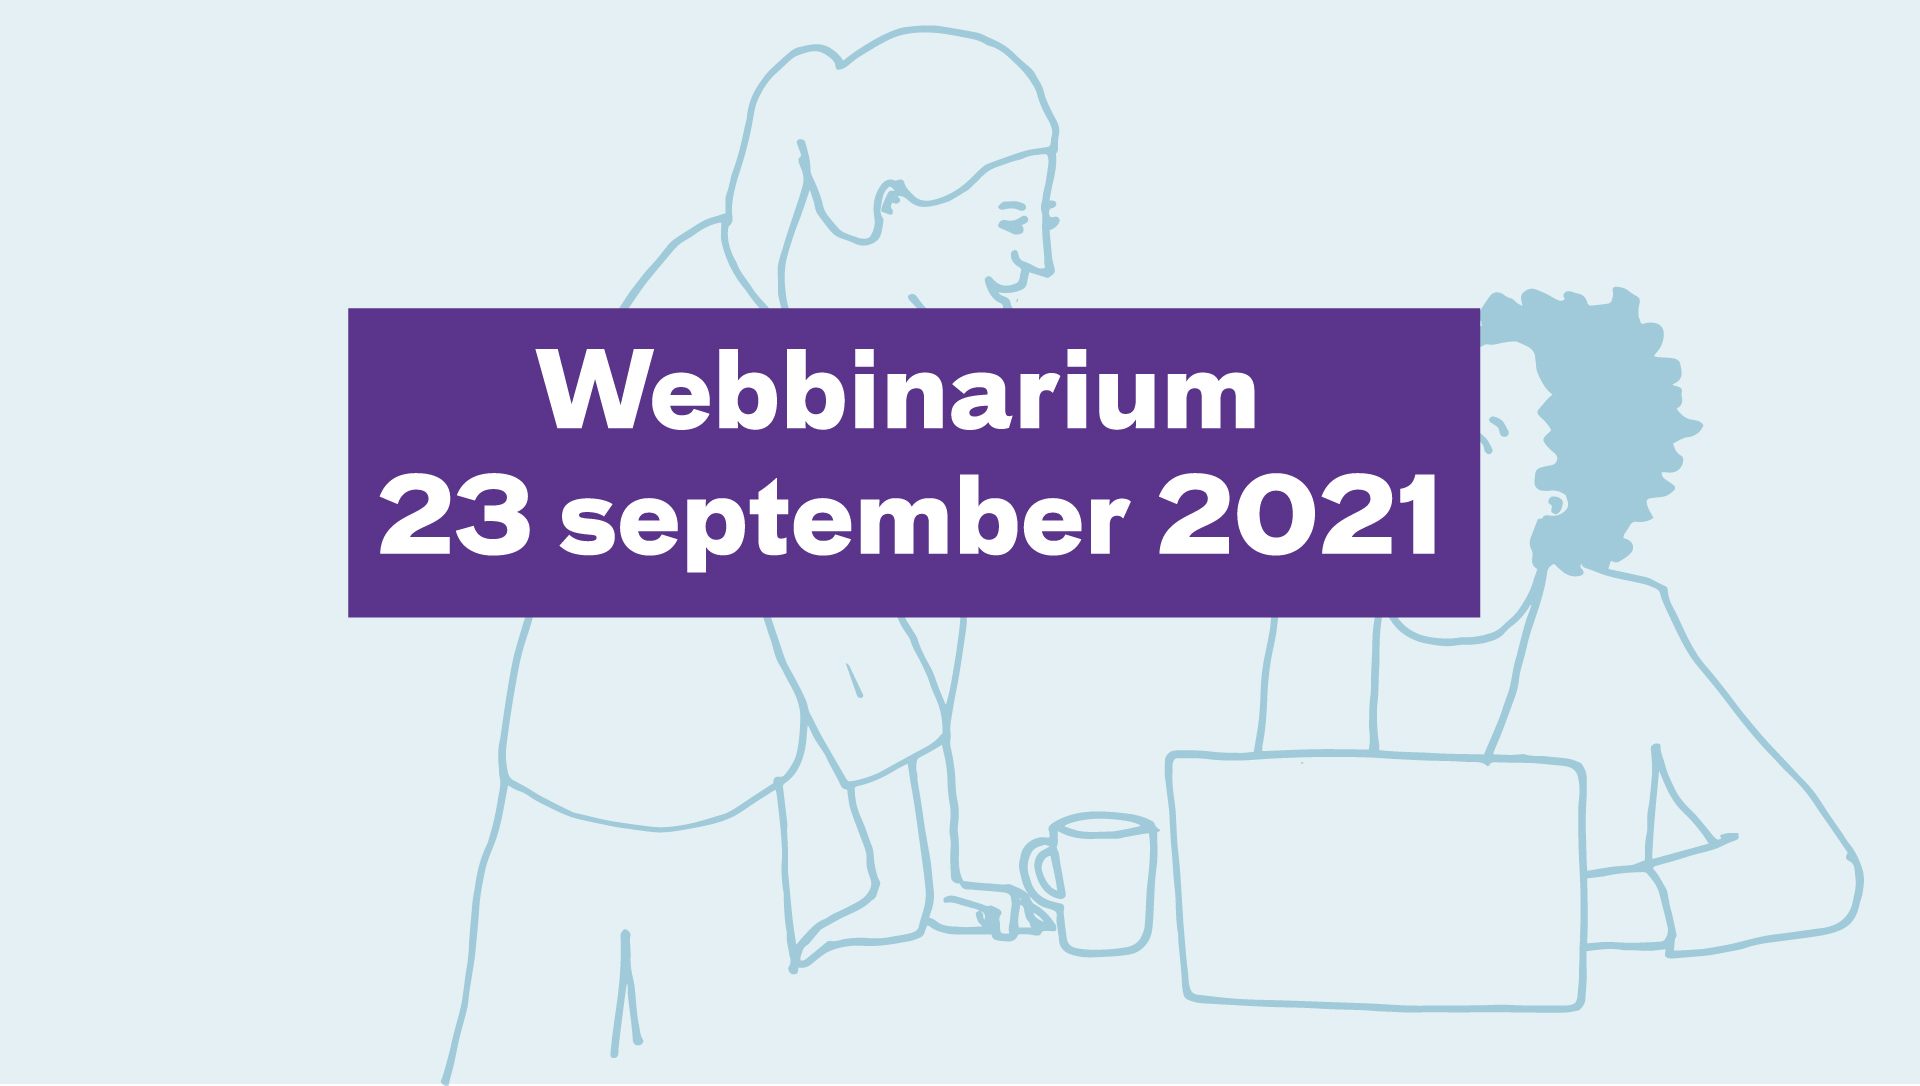 Webbinarium 23 september 2021